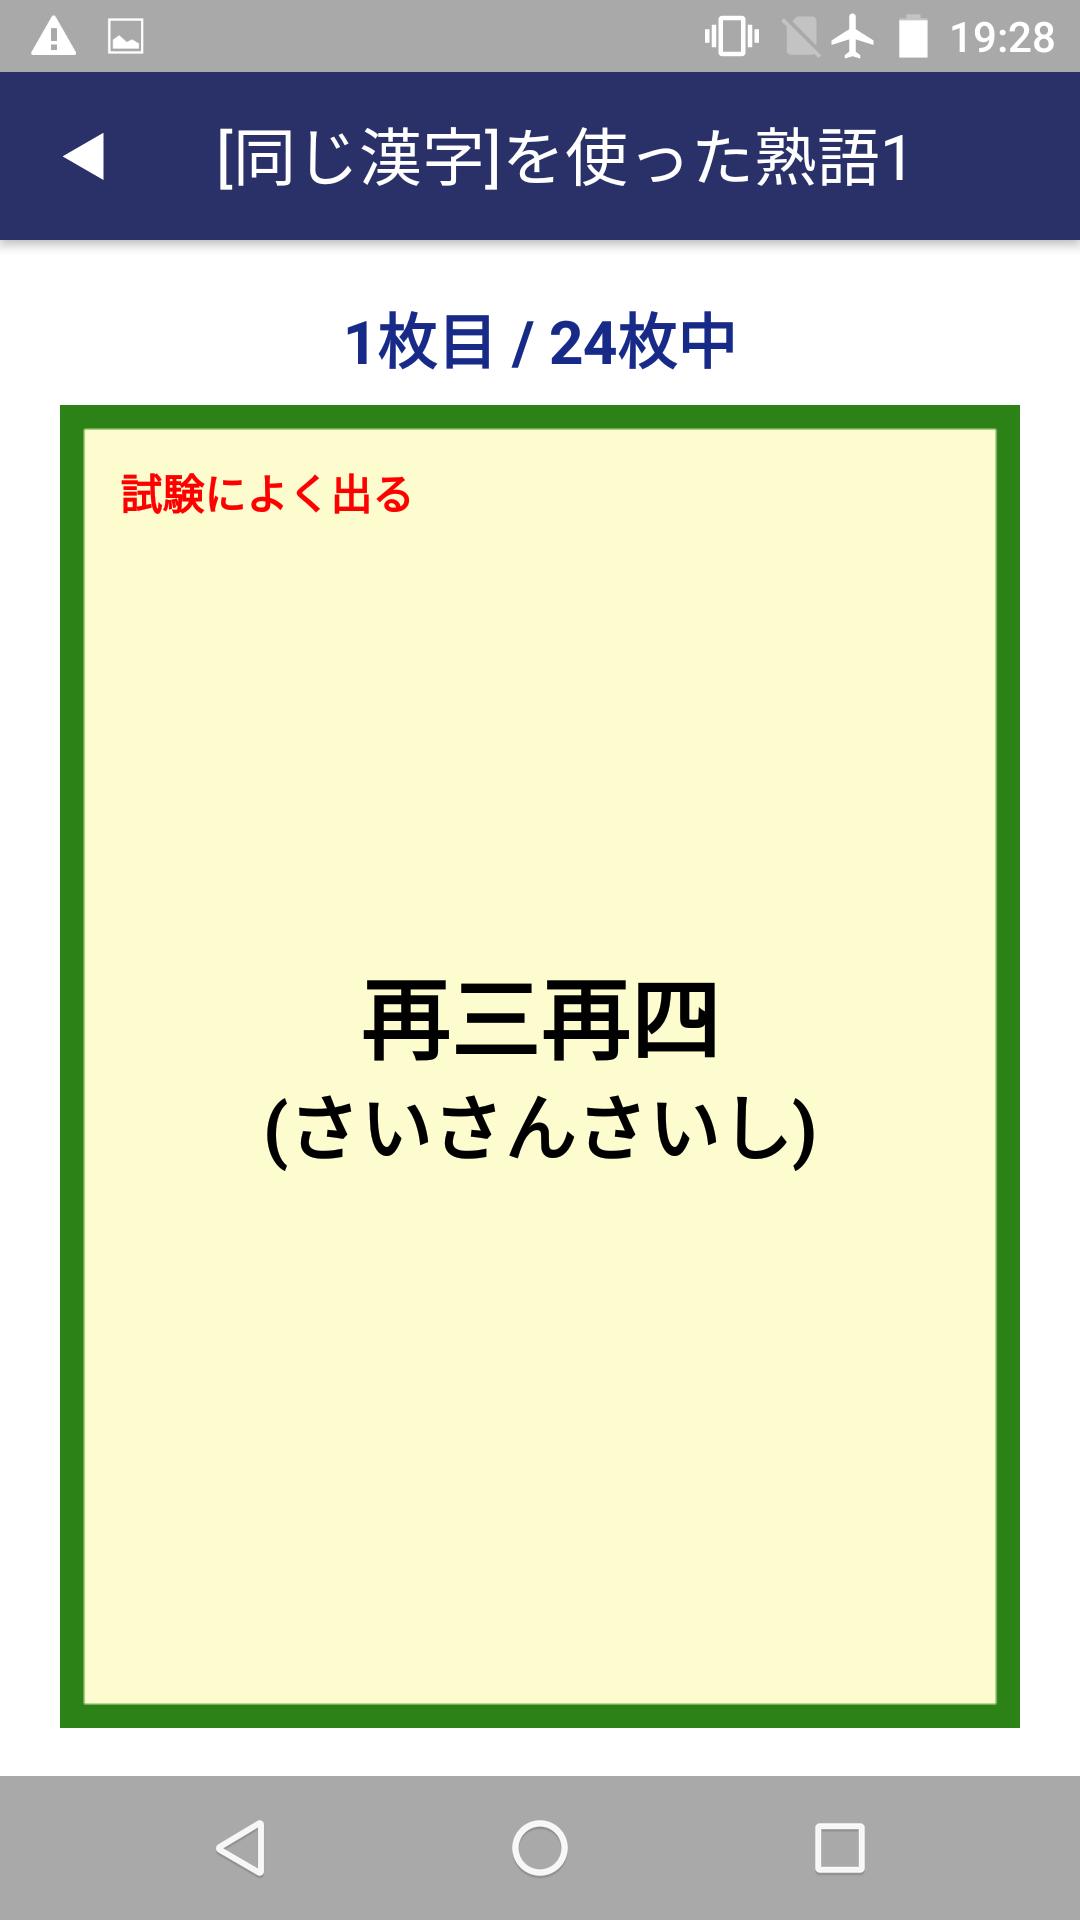 四字熟語カードアプリ For Android Apk Download